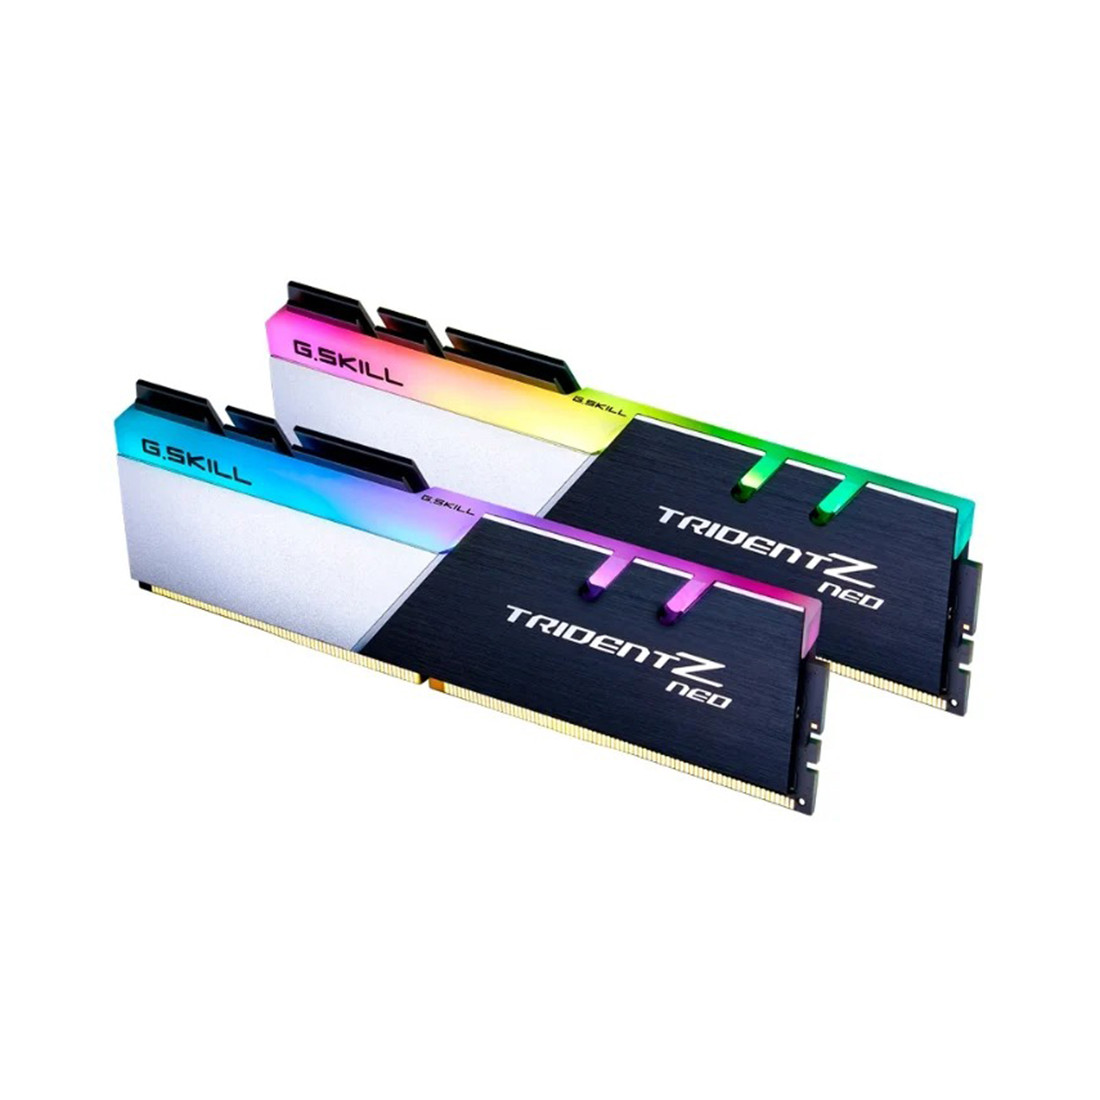 Комплект модулей памяти  G.SKILL  TridentZ Neo RGB F4-3200C16D-16GTZN (Kit 2x8GB)  DDR4  16GB  DIMM   Черный